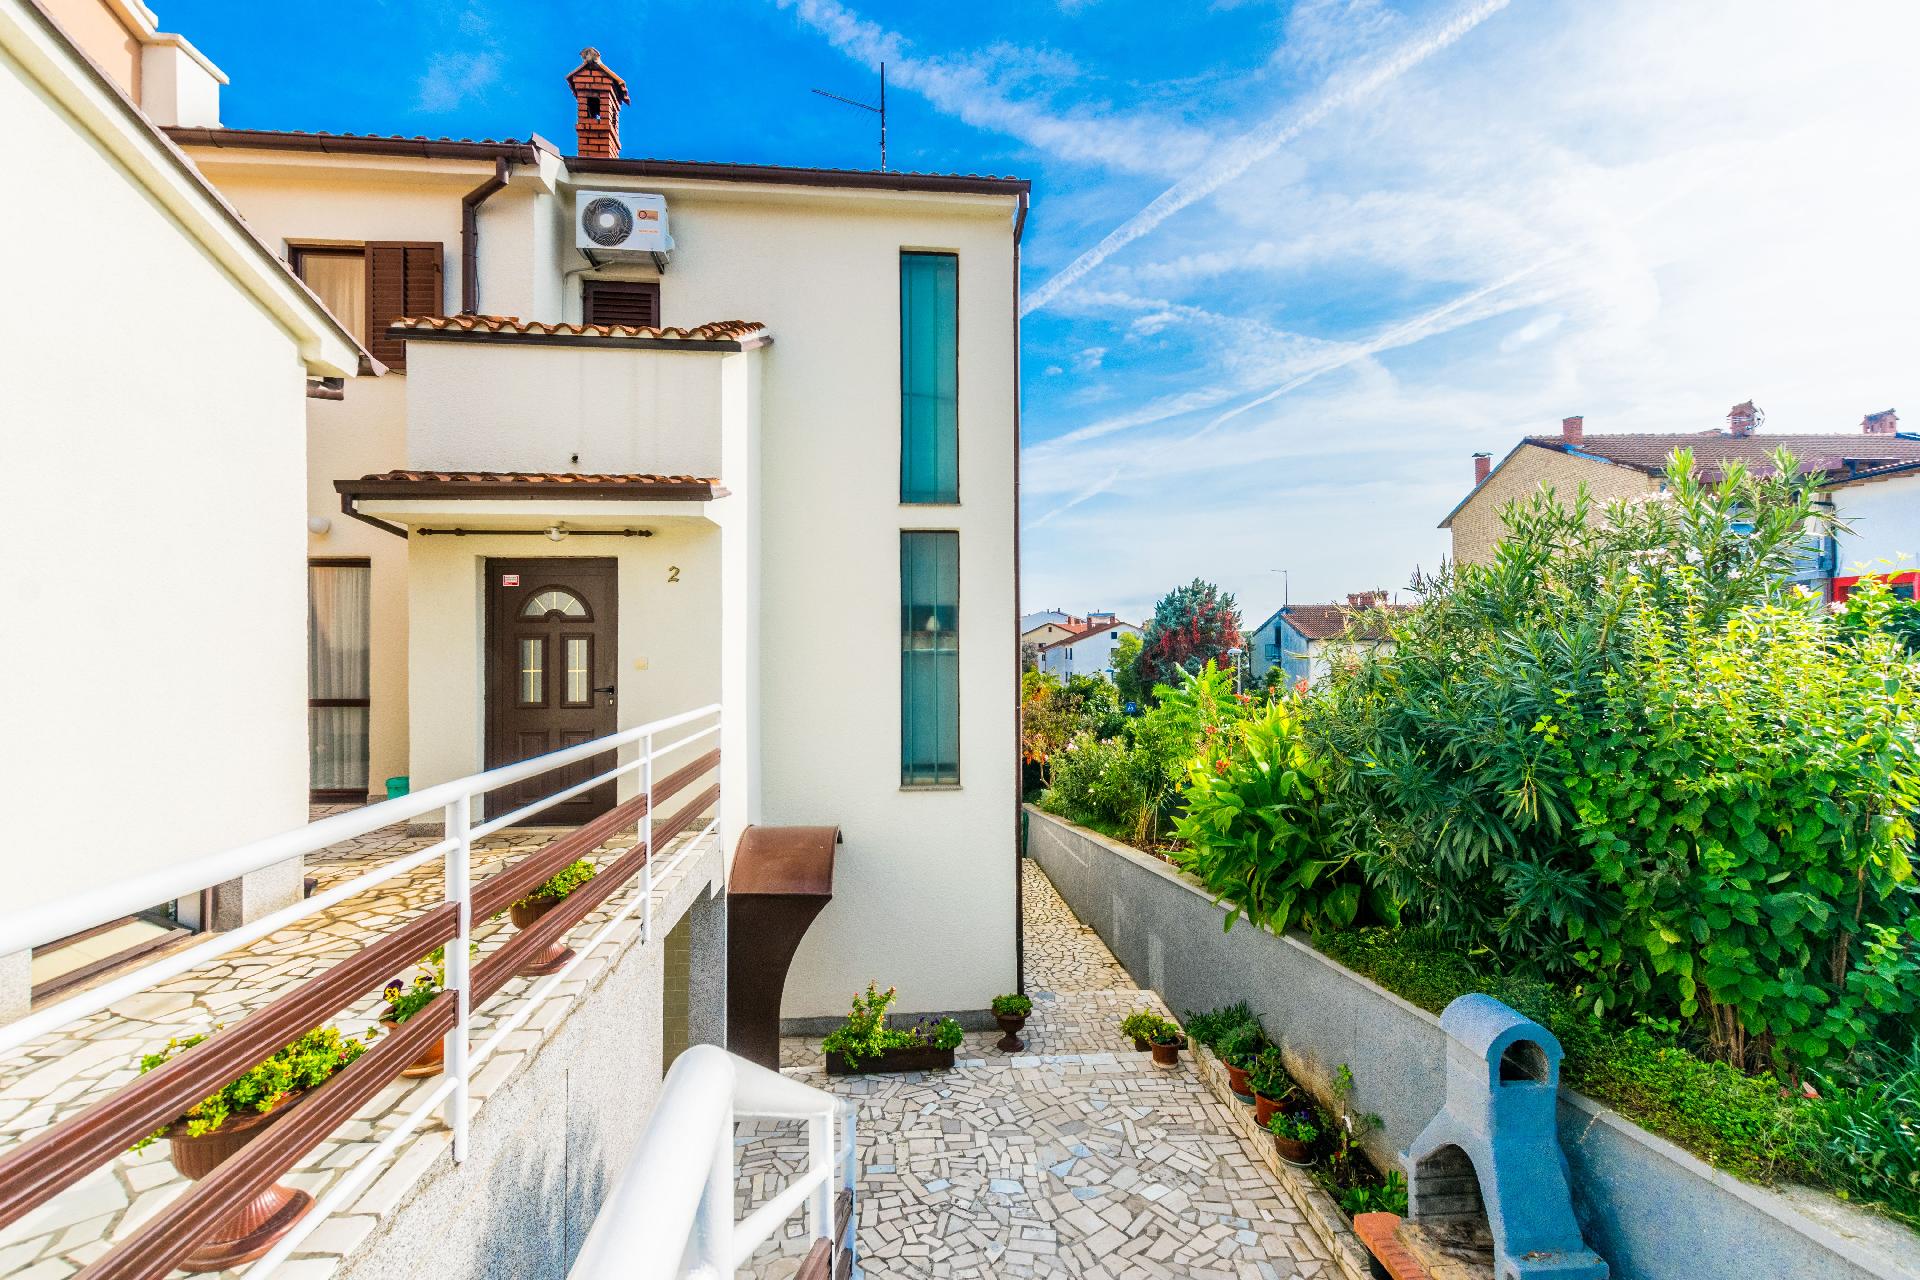 Ferienwohnung für 4 Personen ca. 60 m² i  in Kroatien